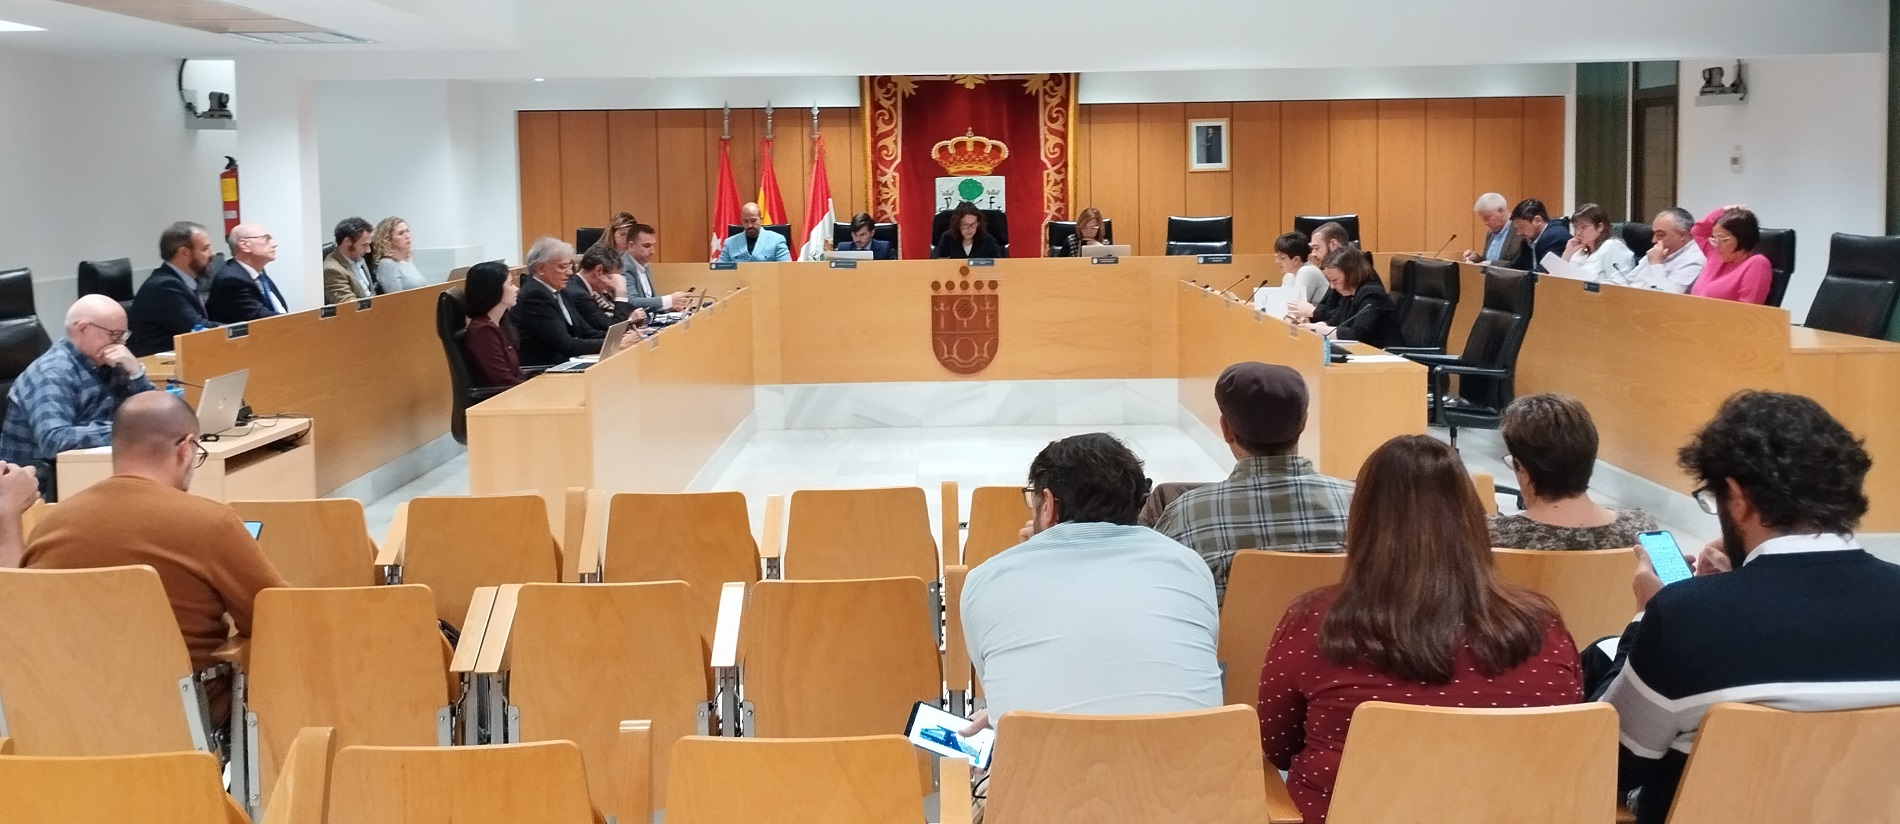 Acuerdos relevantes del Ayuntamiento Pleno de San Sebastián de los Reyes celebrado el 21 de marzo 